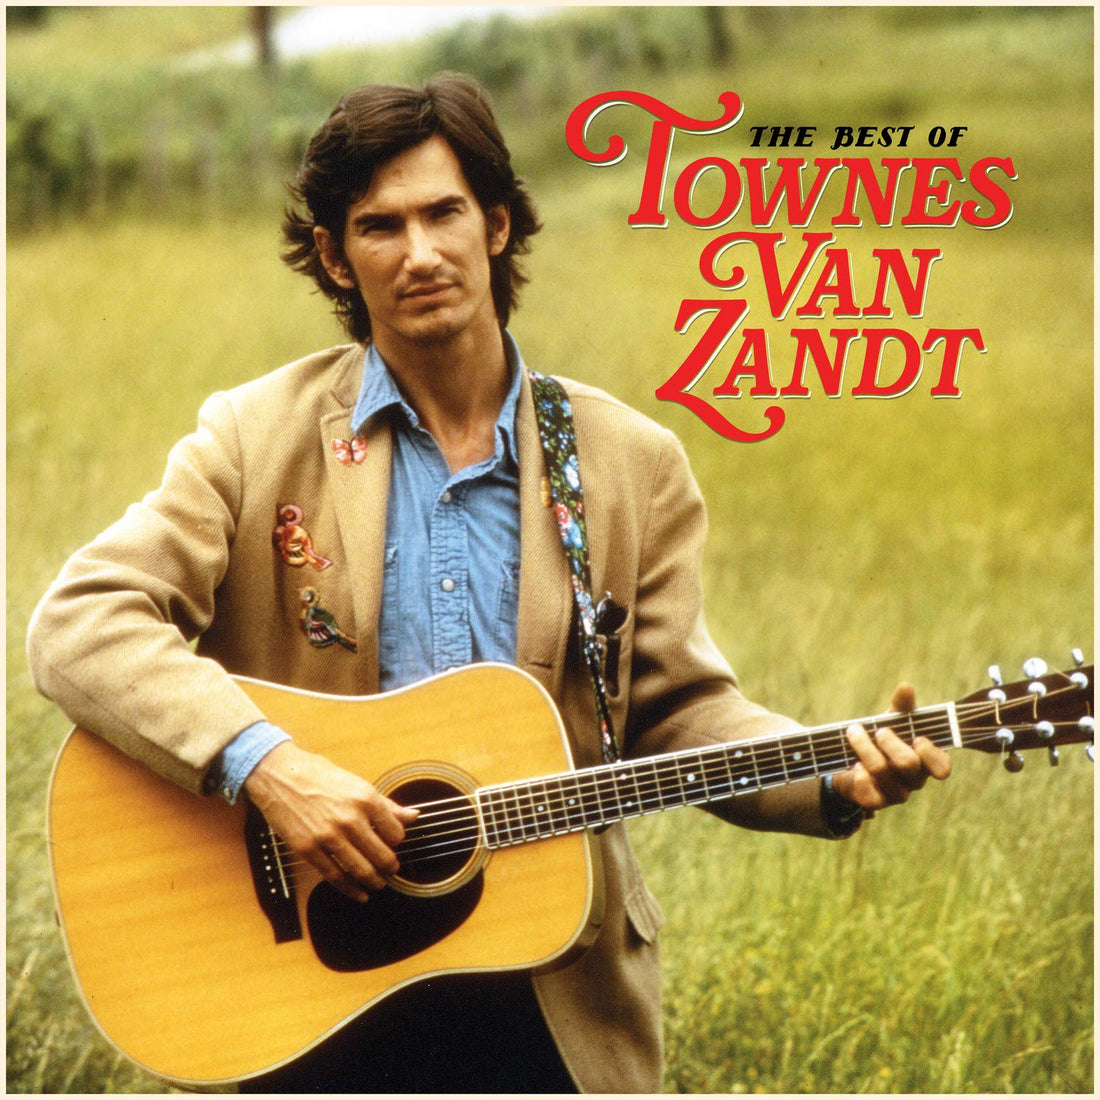 Townes Van Zandt- Best Of